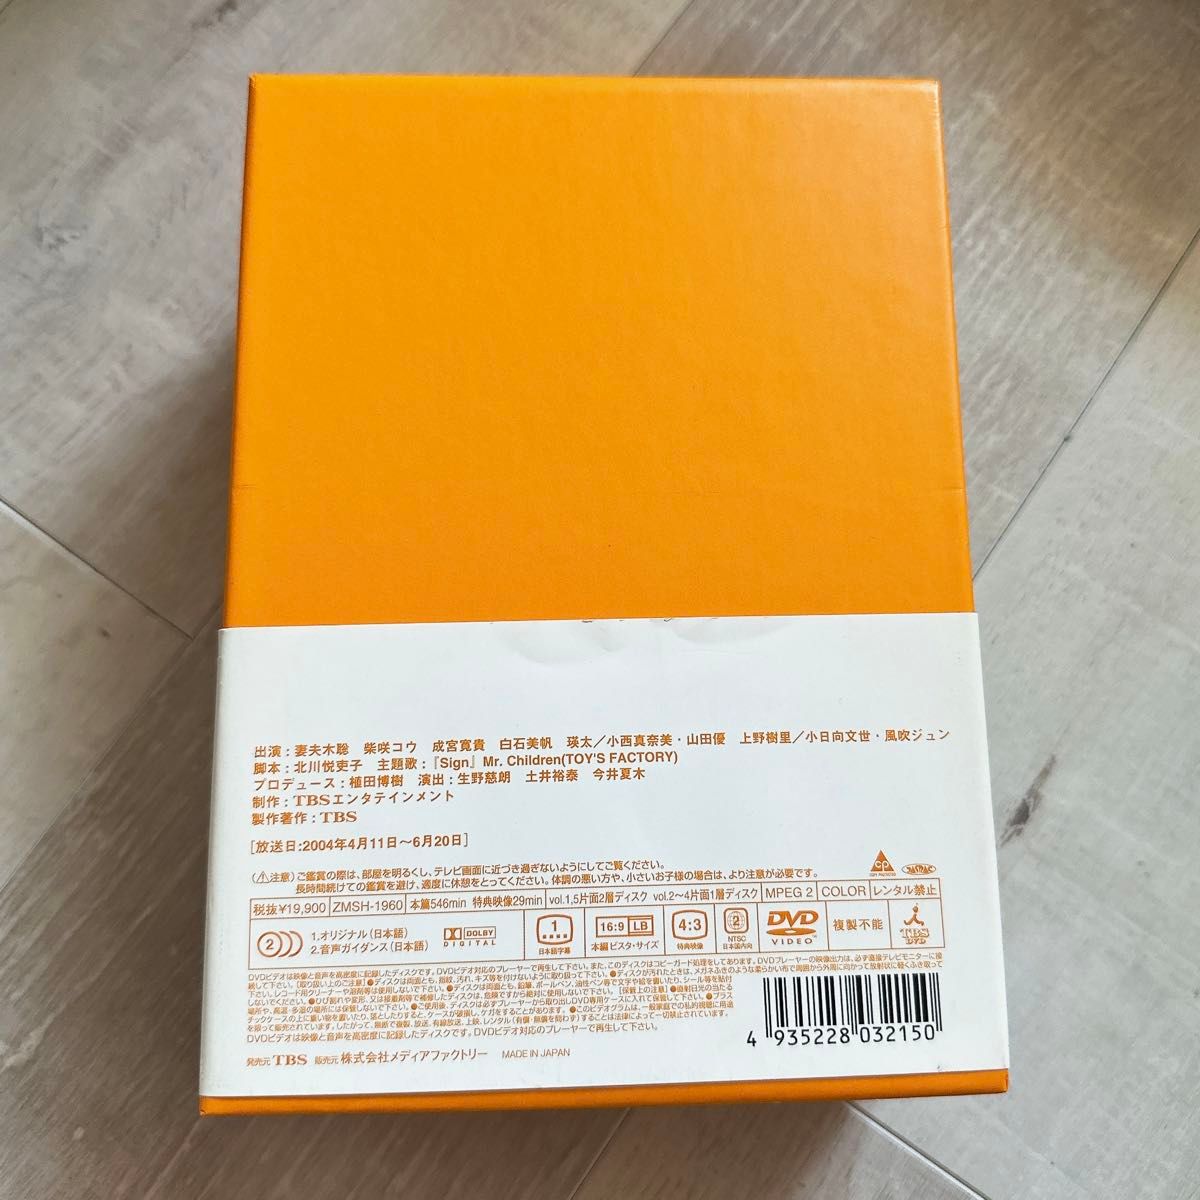 オレンジ デイズ DVD BOX 5枚組 妻夫木聡 柴咲コウ 北川悦吏子